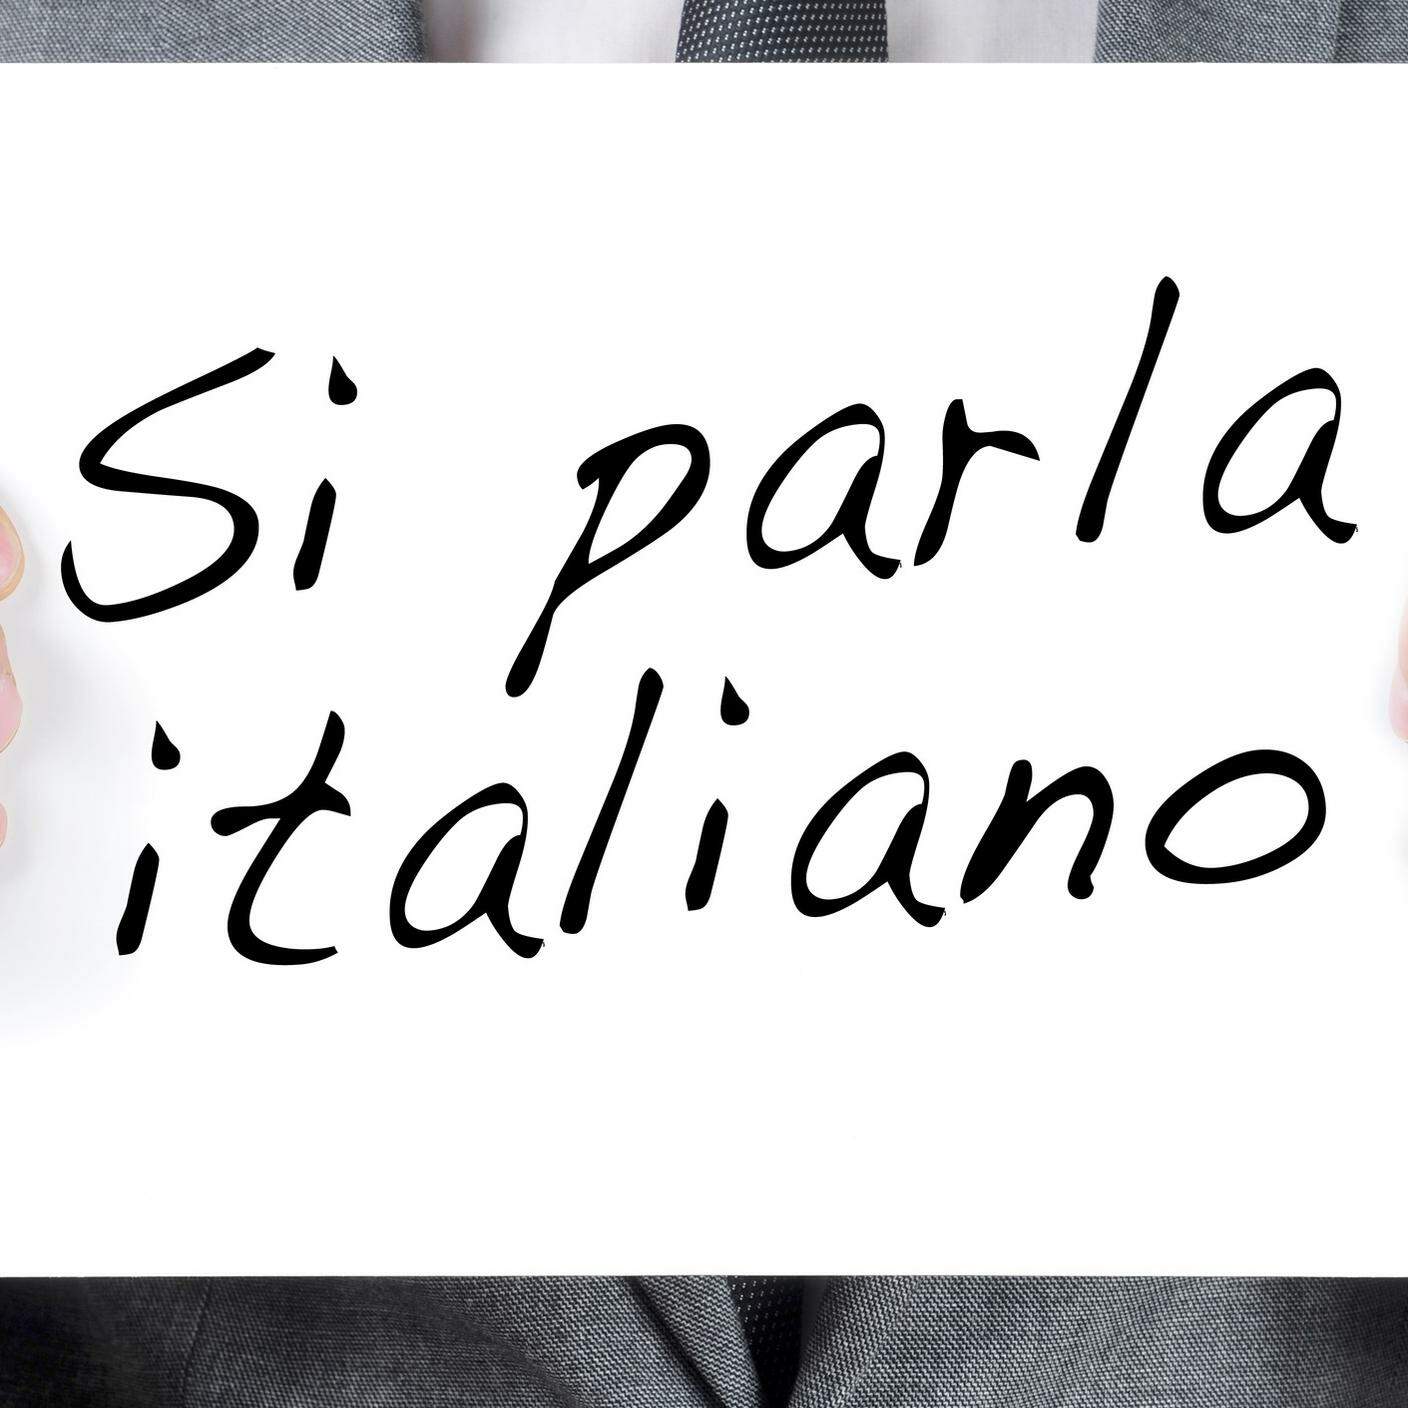 Promozione della lingua italiana